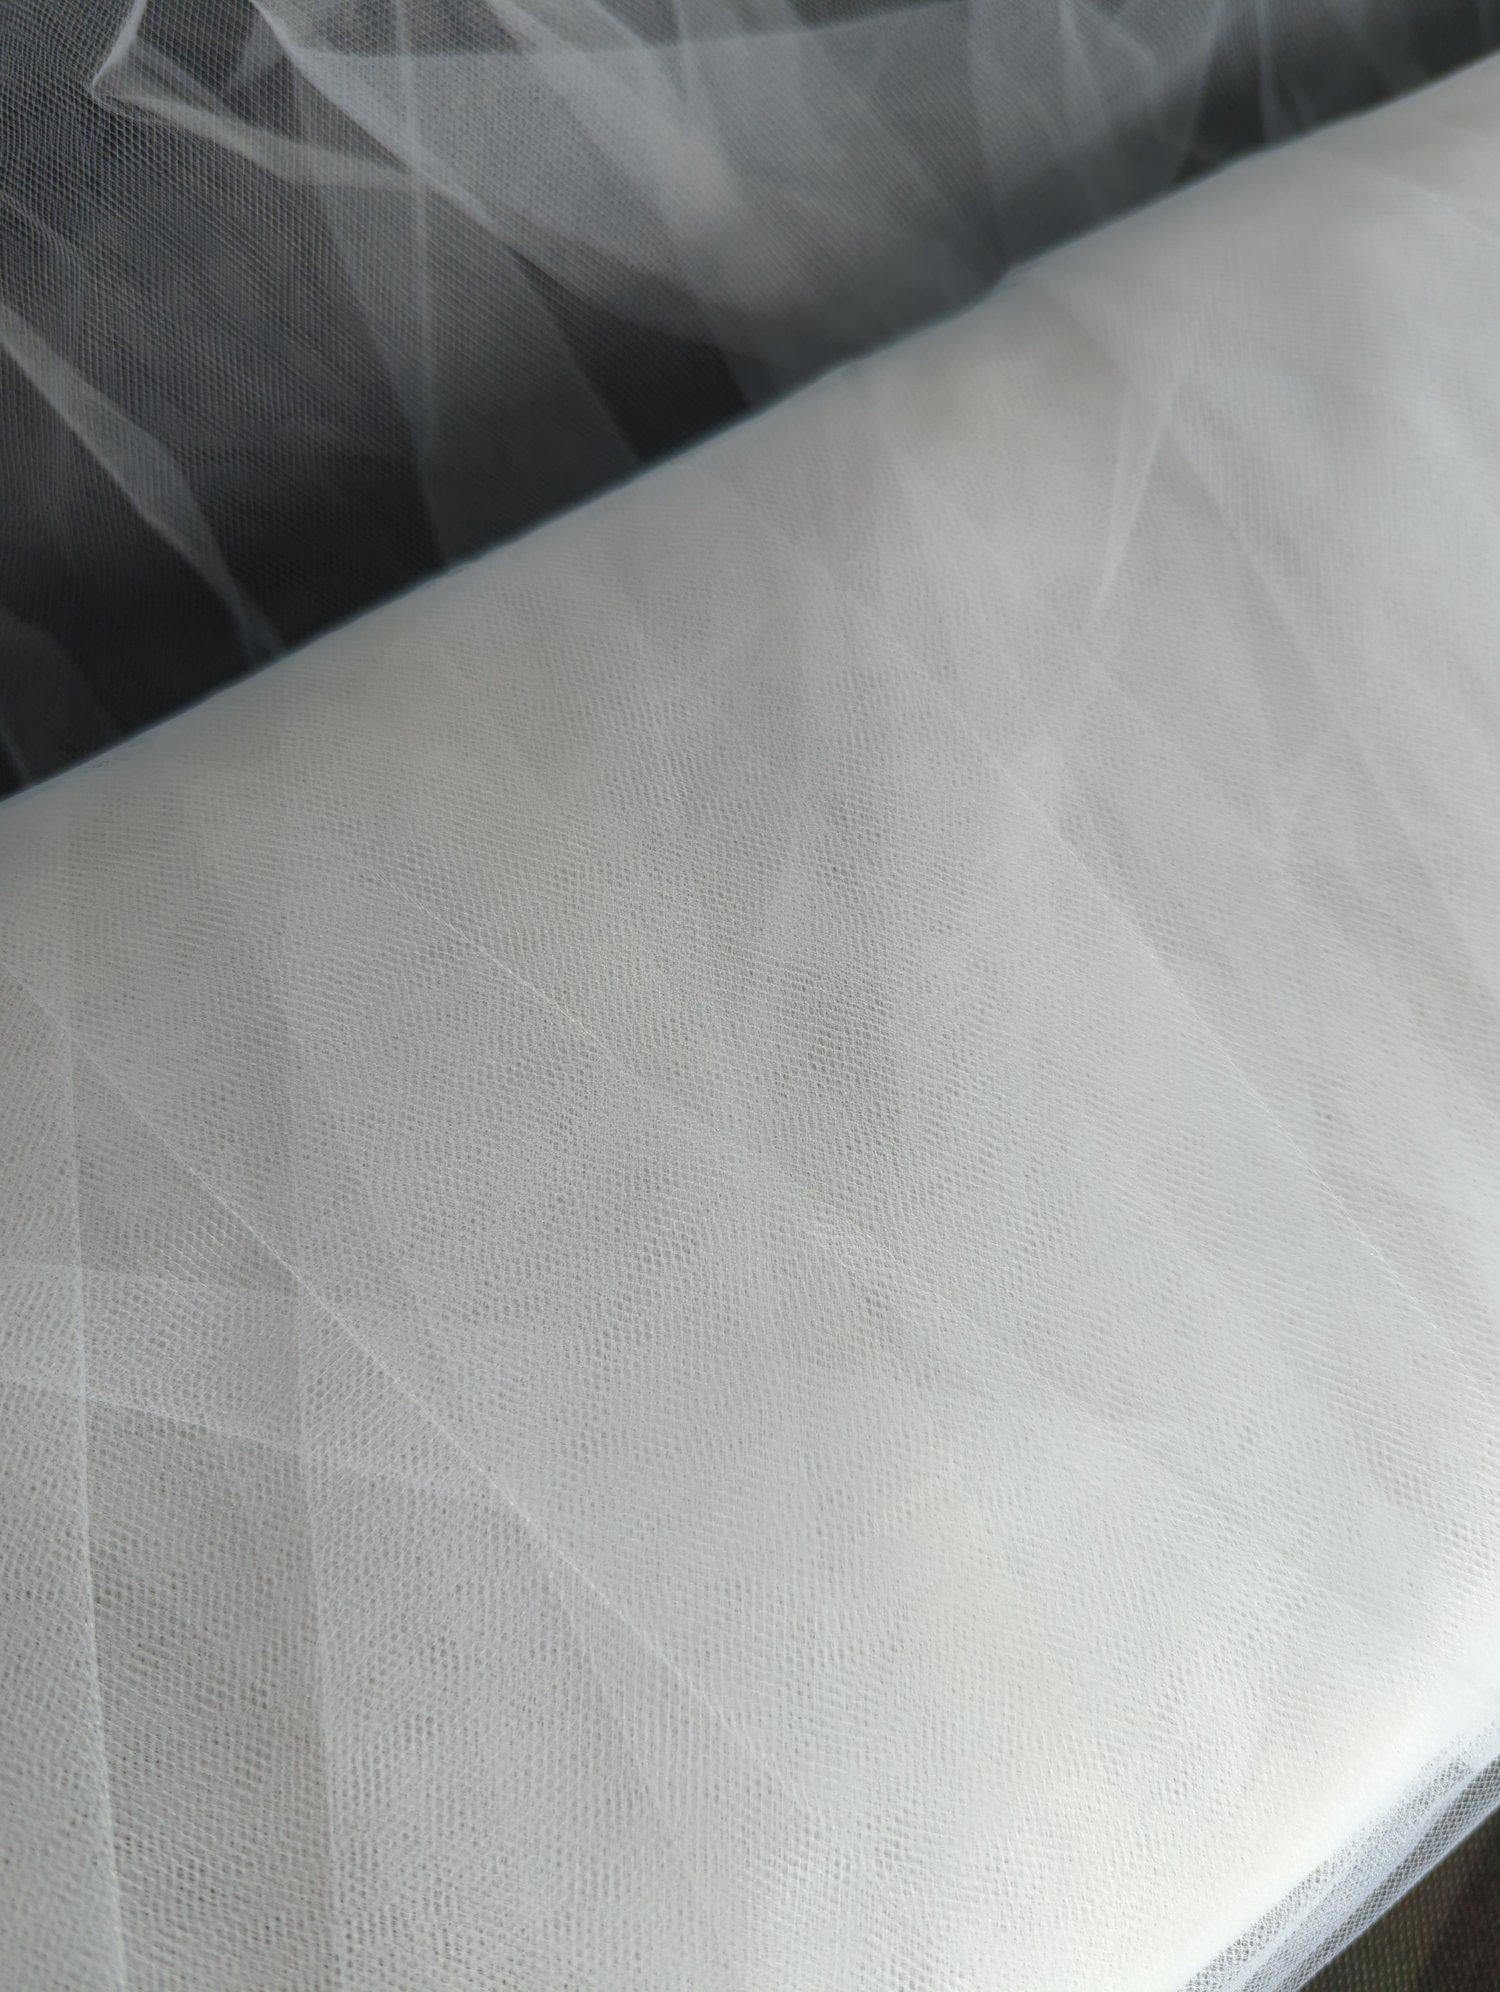 White Tulle - 3+ Yards — flippityjane fabrics